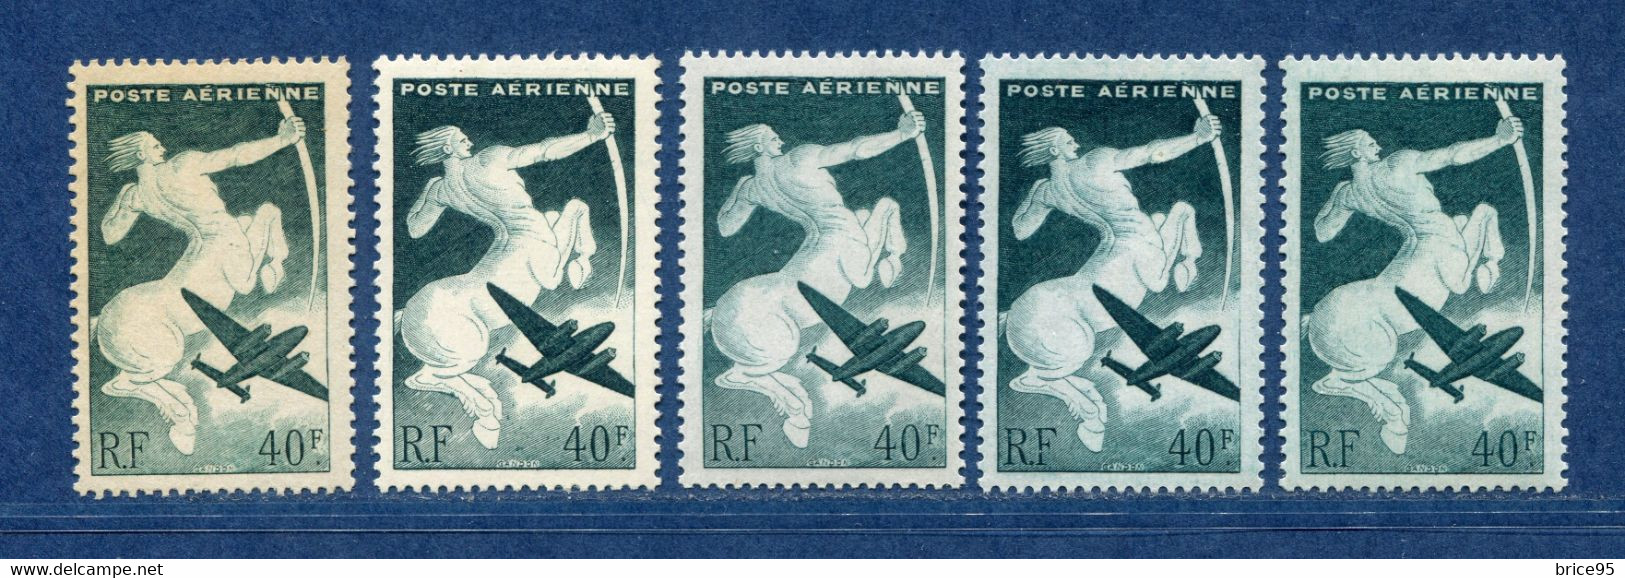 ⭐ France - Variété - YT PA N° 16 - Poste Aérienne - Couleurs - Pétouilles - Neuf Sans Charnière - 1946 ⭐ - Ongebruikt